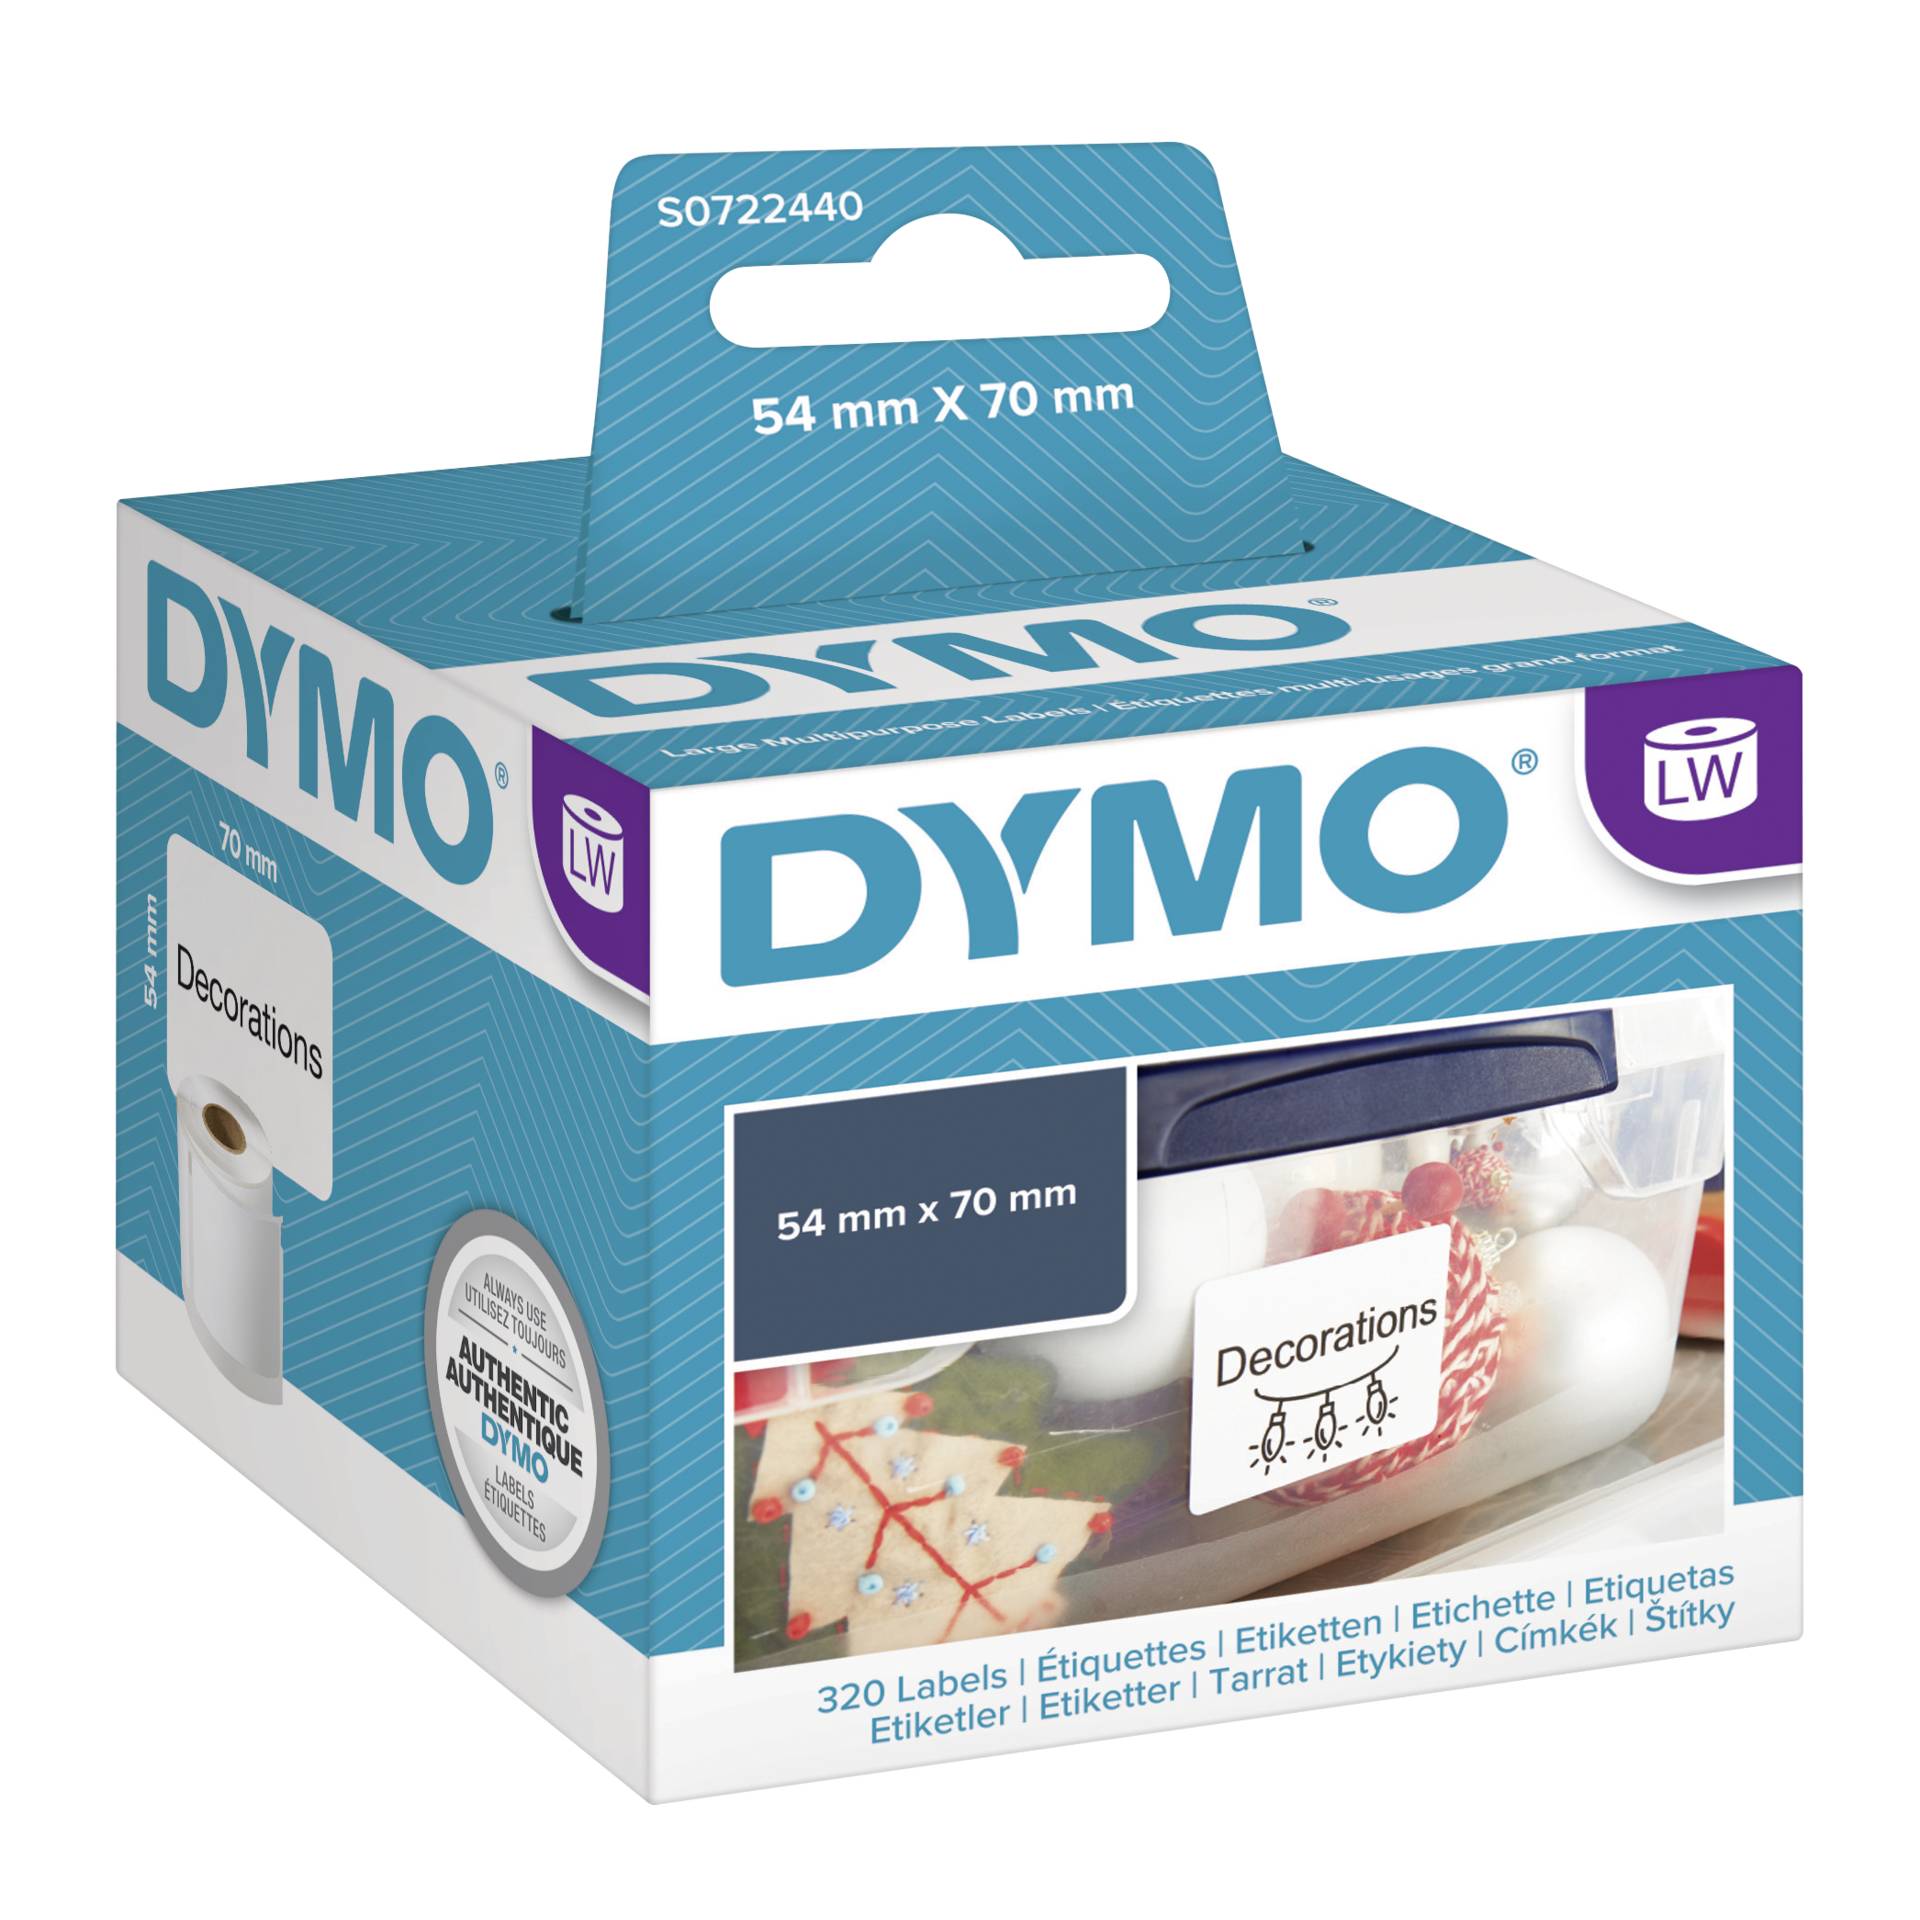 Dymo Etichette per dischetti 54 x 70 mm bianco 320 pz.  9901